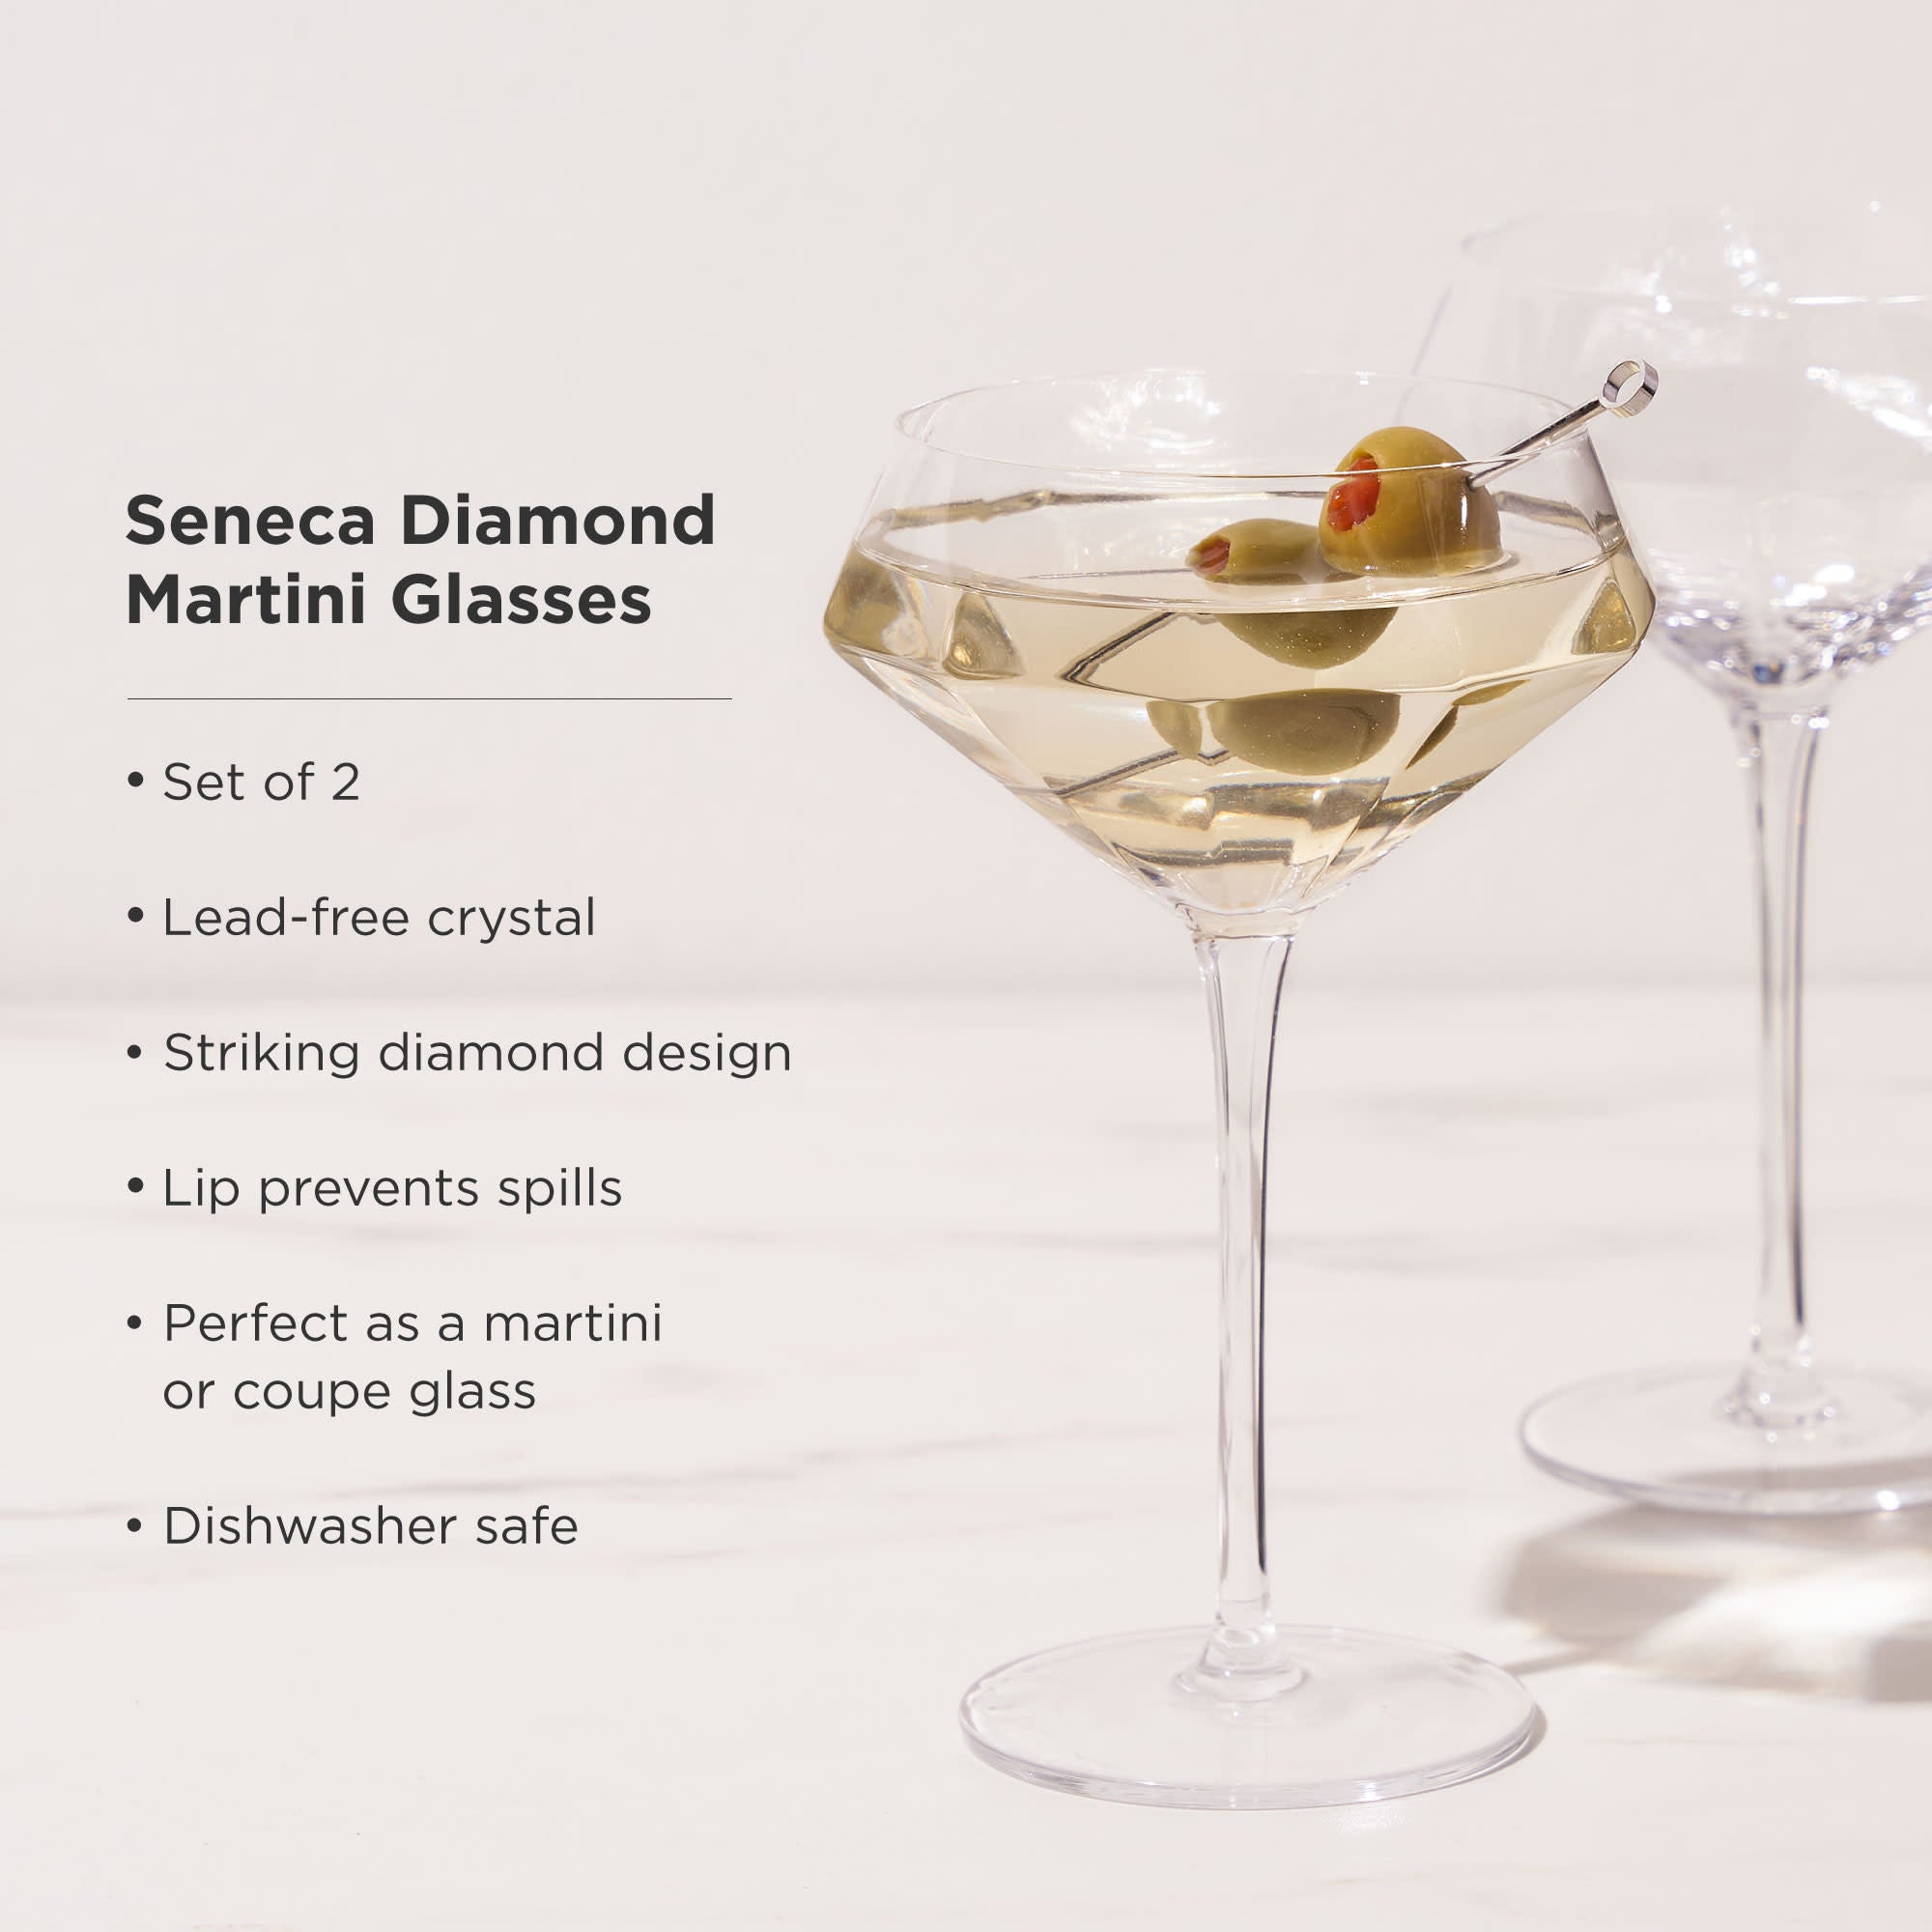 Viski Stemmed Crystal Martini Glasses - Set of 2